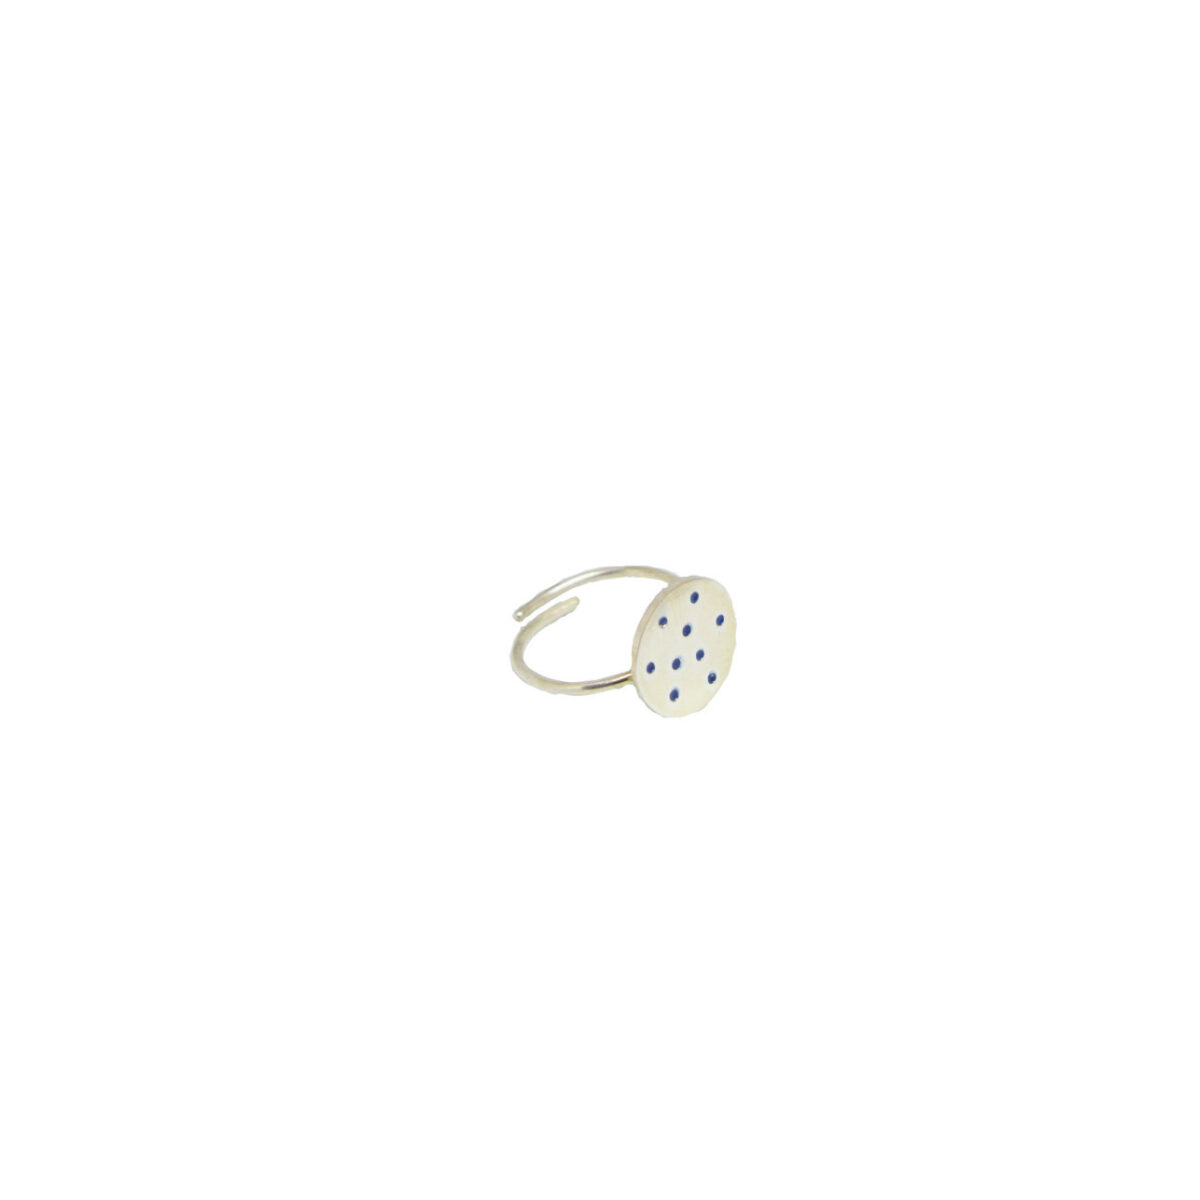 “Πουα” ασημένιο δαχτυλίδι “Πουα” ασημένιο δαχτυλίδι “Πουα” ασημένιο δαχτυλίδι 4